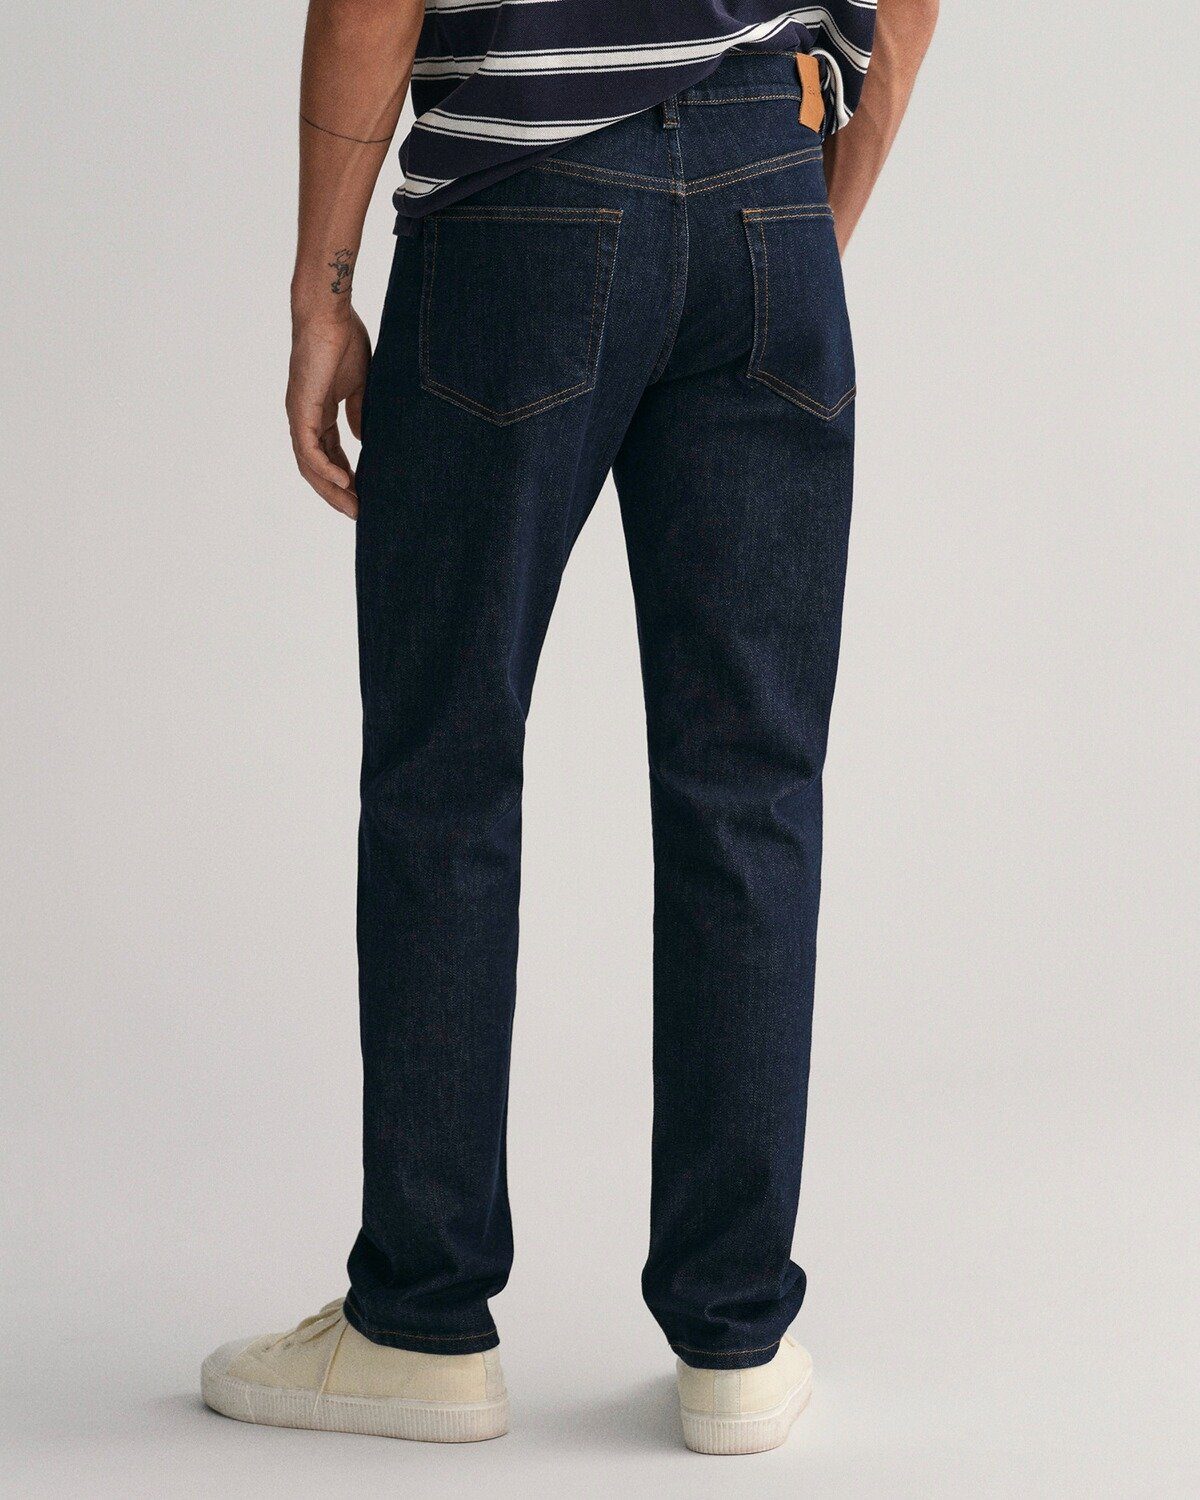 Gant Jeans Dunkelblau 5-Pocket-Jeans Fit Slim